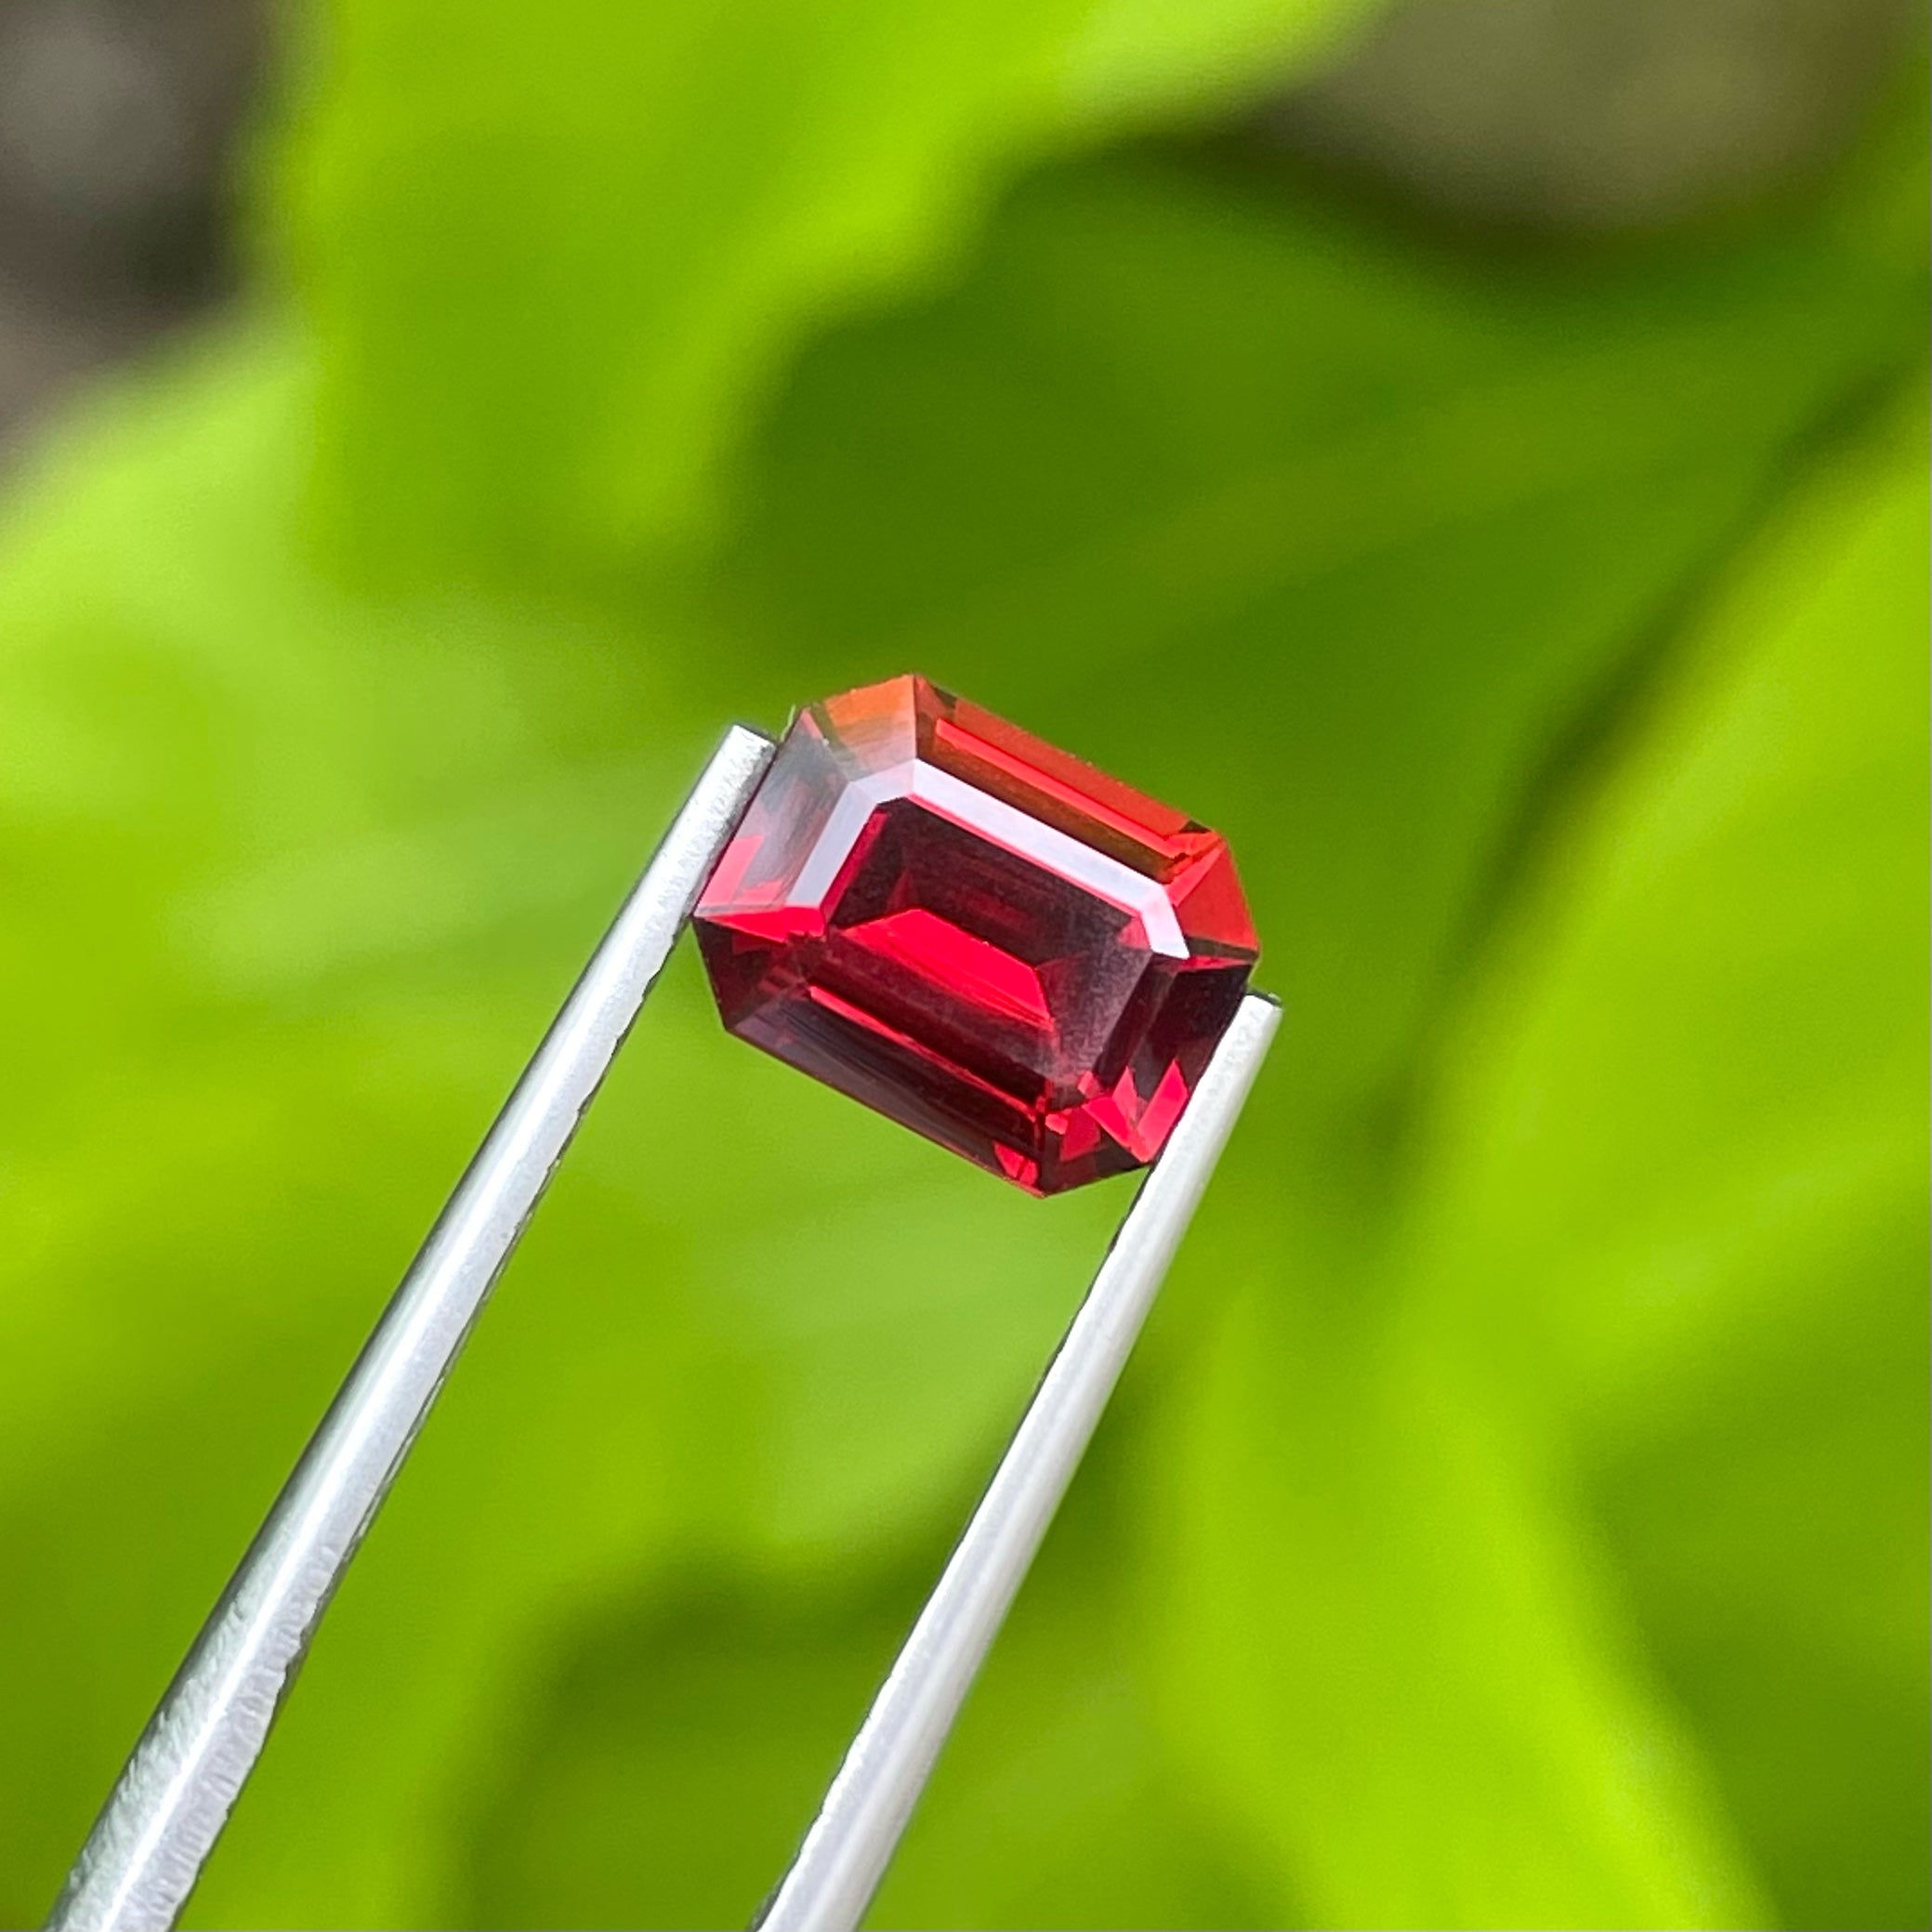 Majestic Red Rhodolite Garnet 2.50 carats Emerald Cut Gemstone from Madagascar